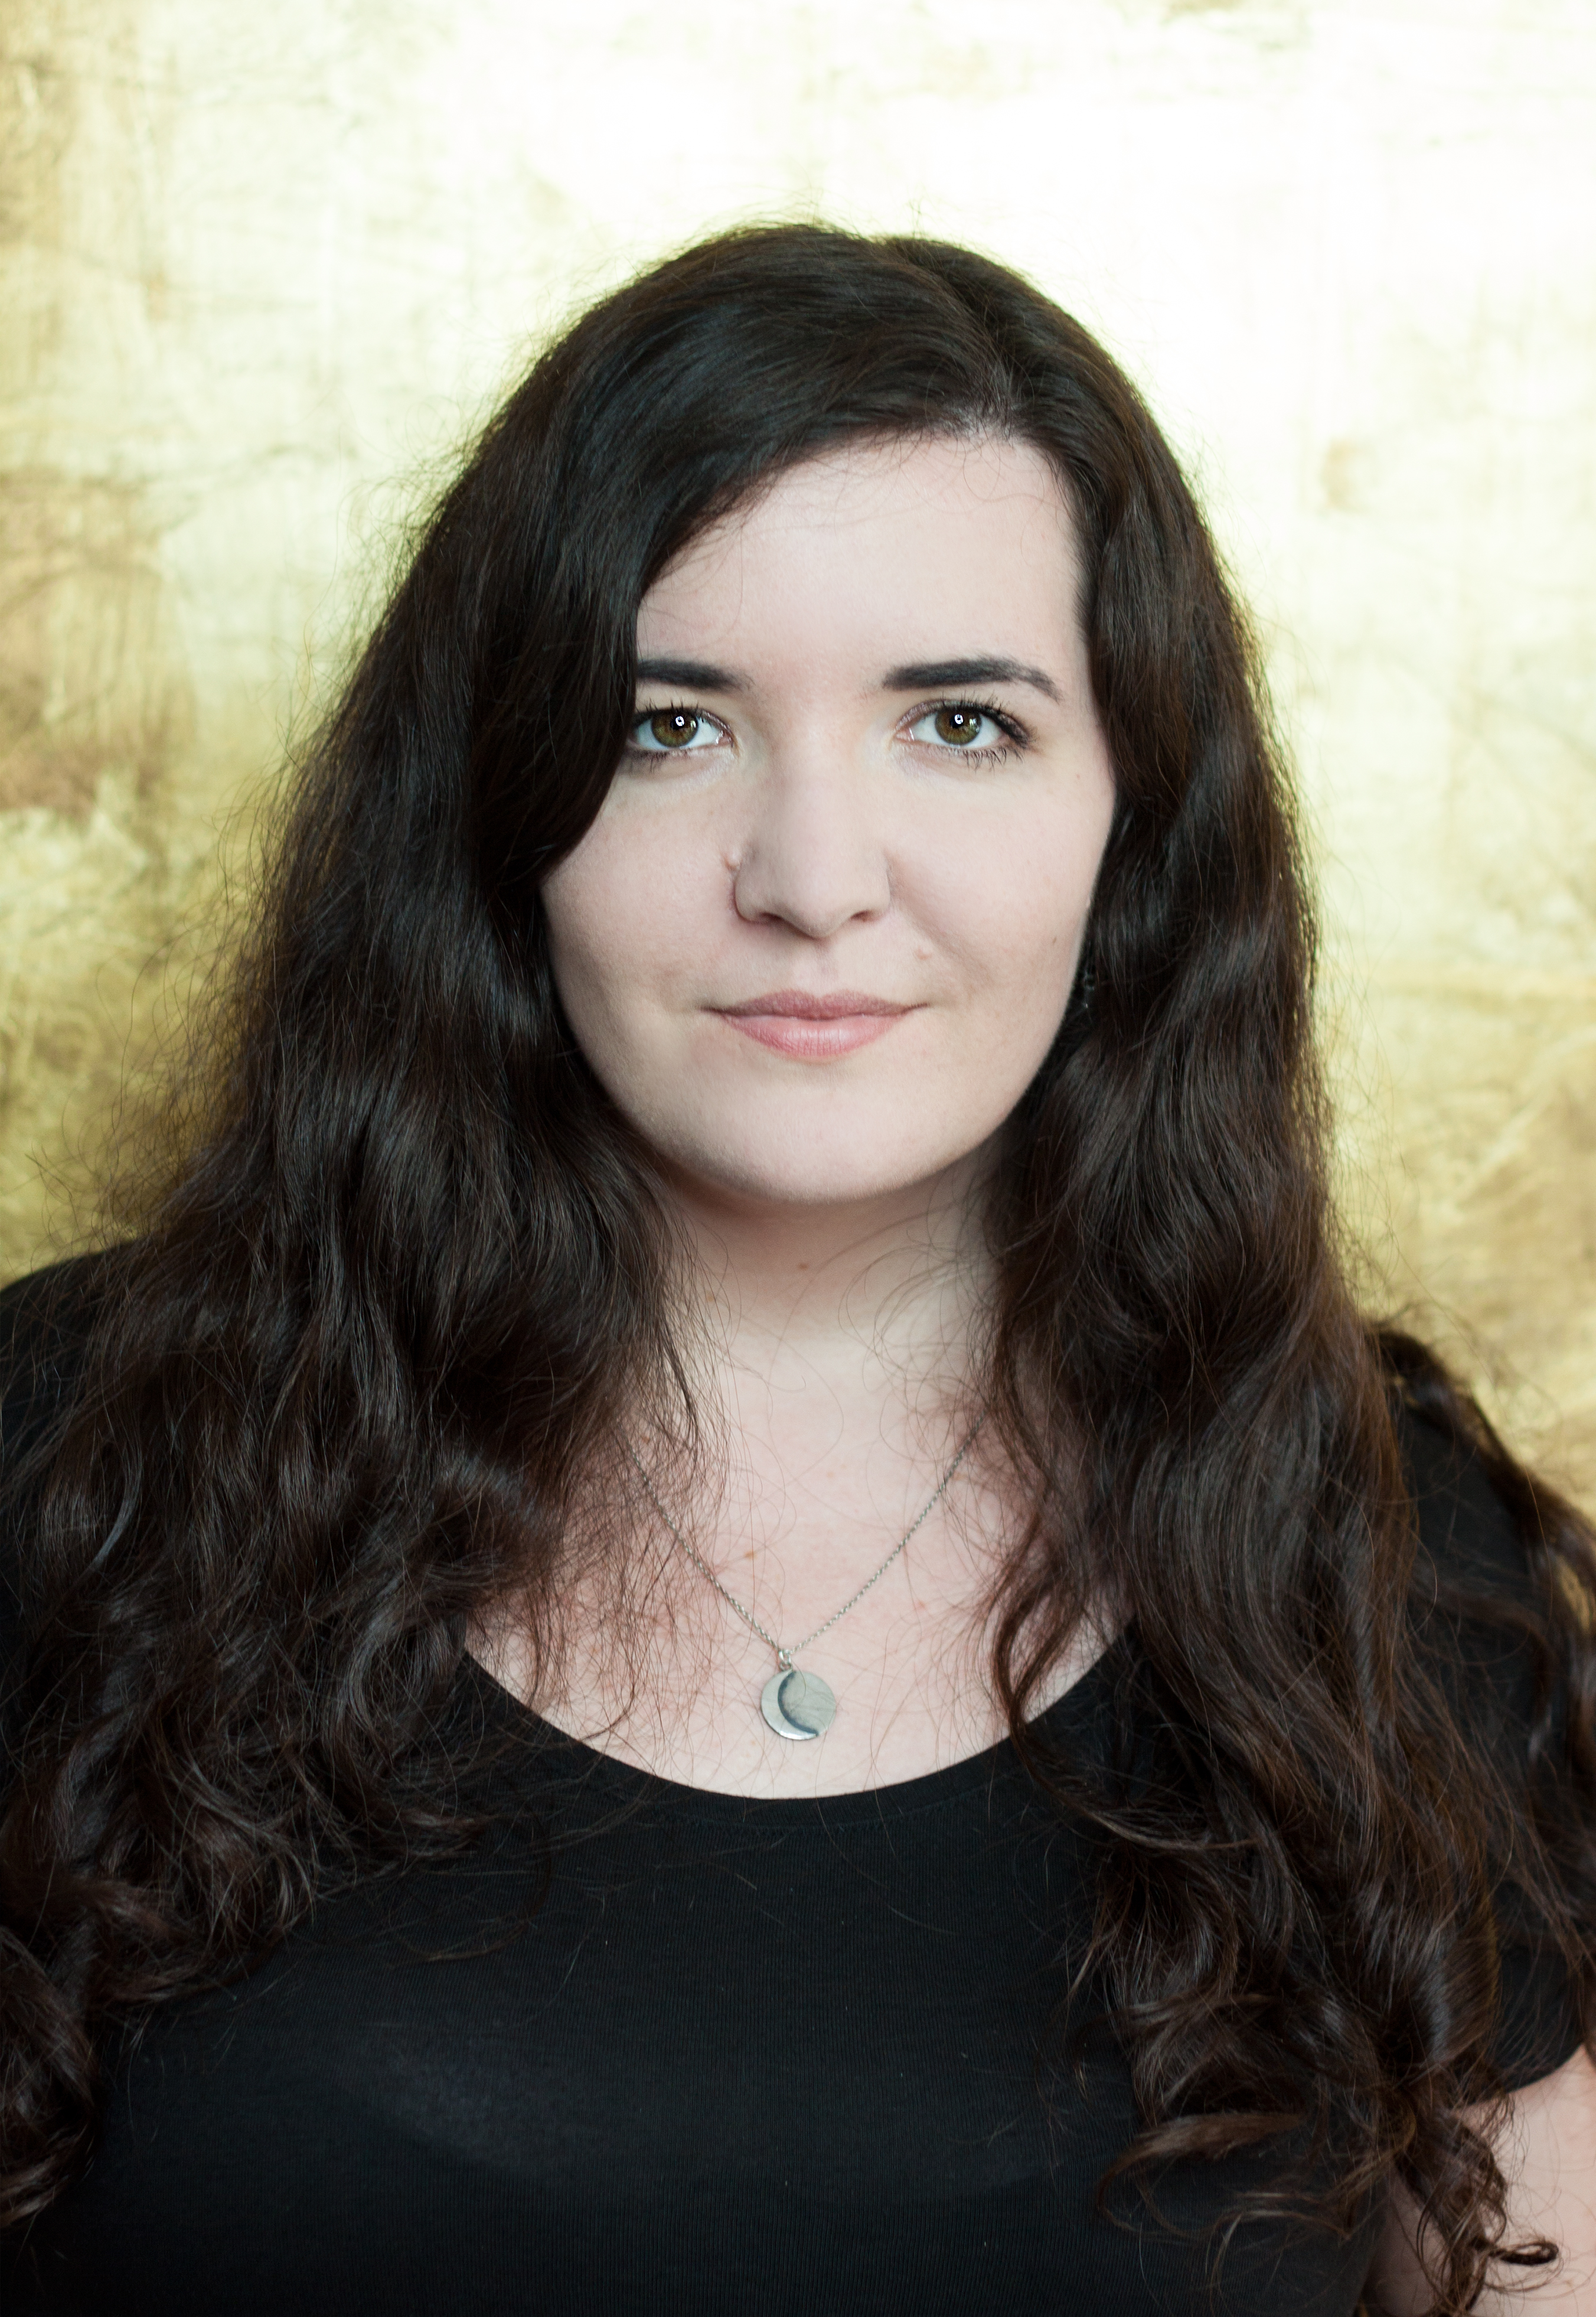 Frauen im Gaming: Interview mit Rae Grimm, Chefredakteurin bei GamePro HERO